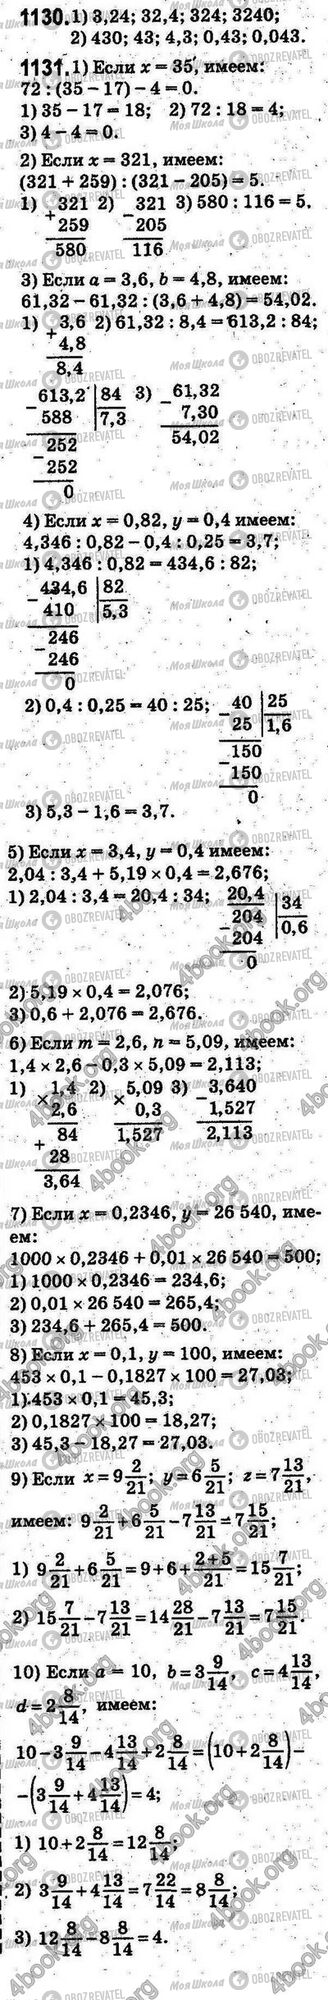 ГДЗ Математика 5 класс страница 1130-1131